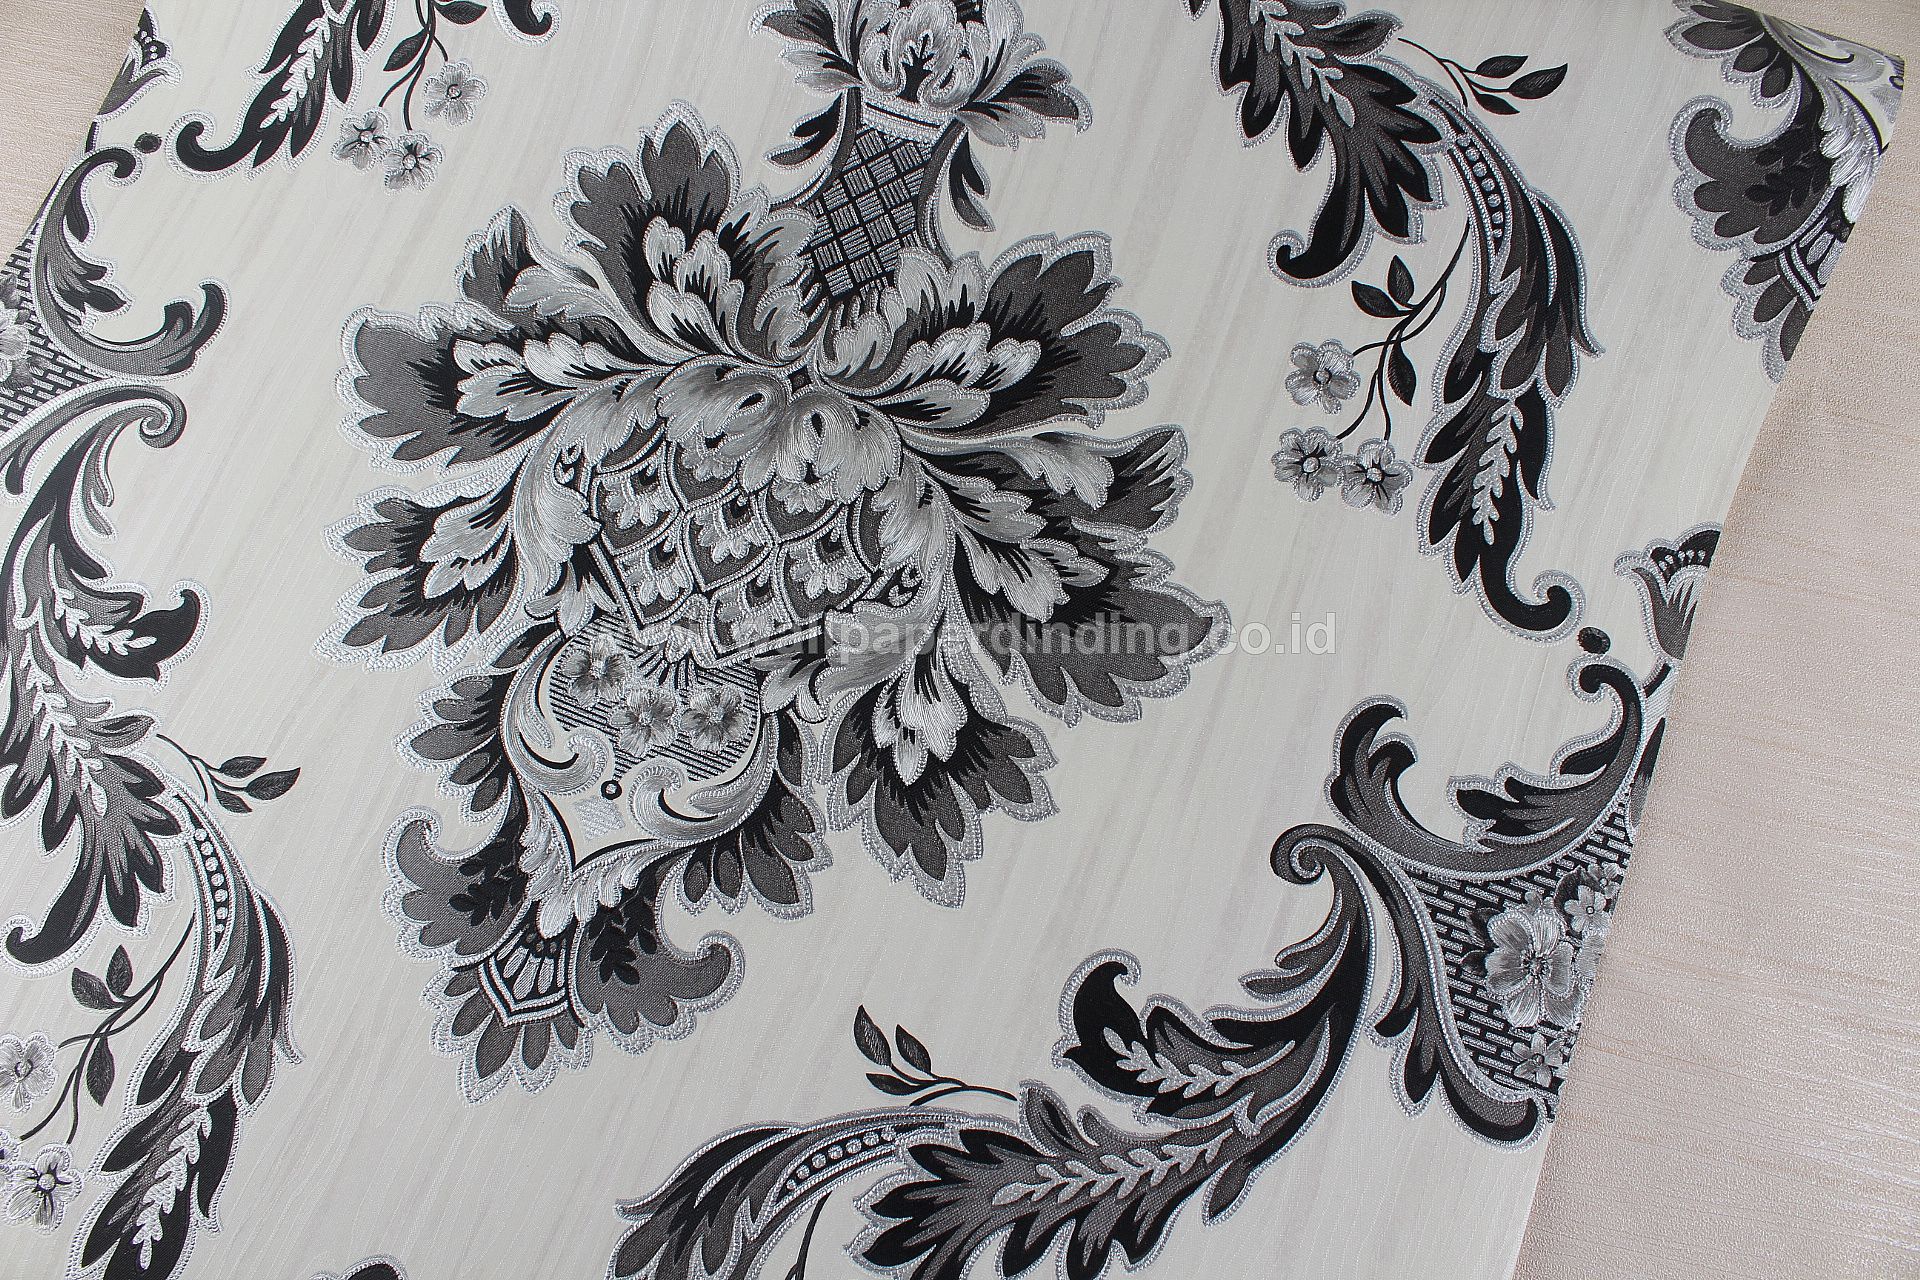 Wallpaper Dinding Batik Hitam Silver Lux301-3 - Batik Hitam Putih - HD Wallpaper 